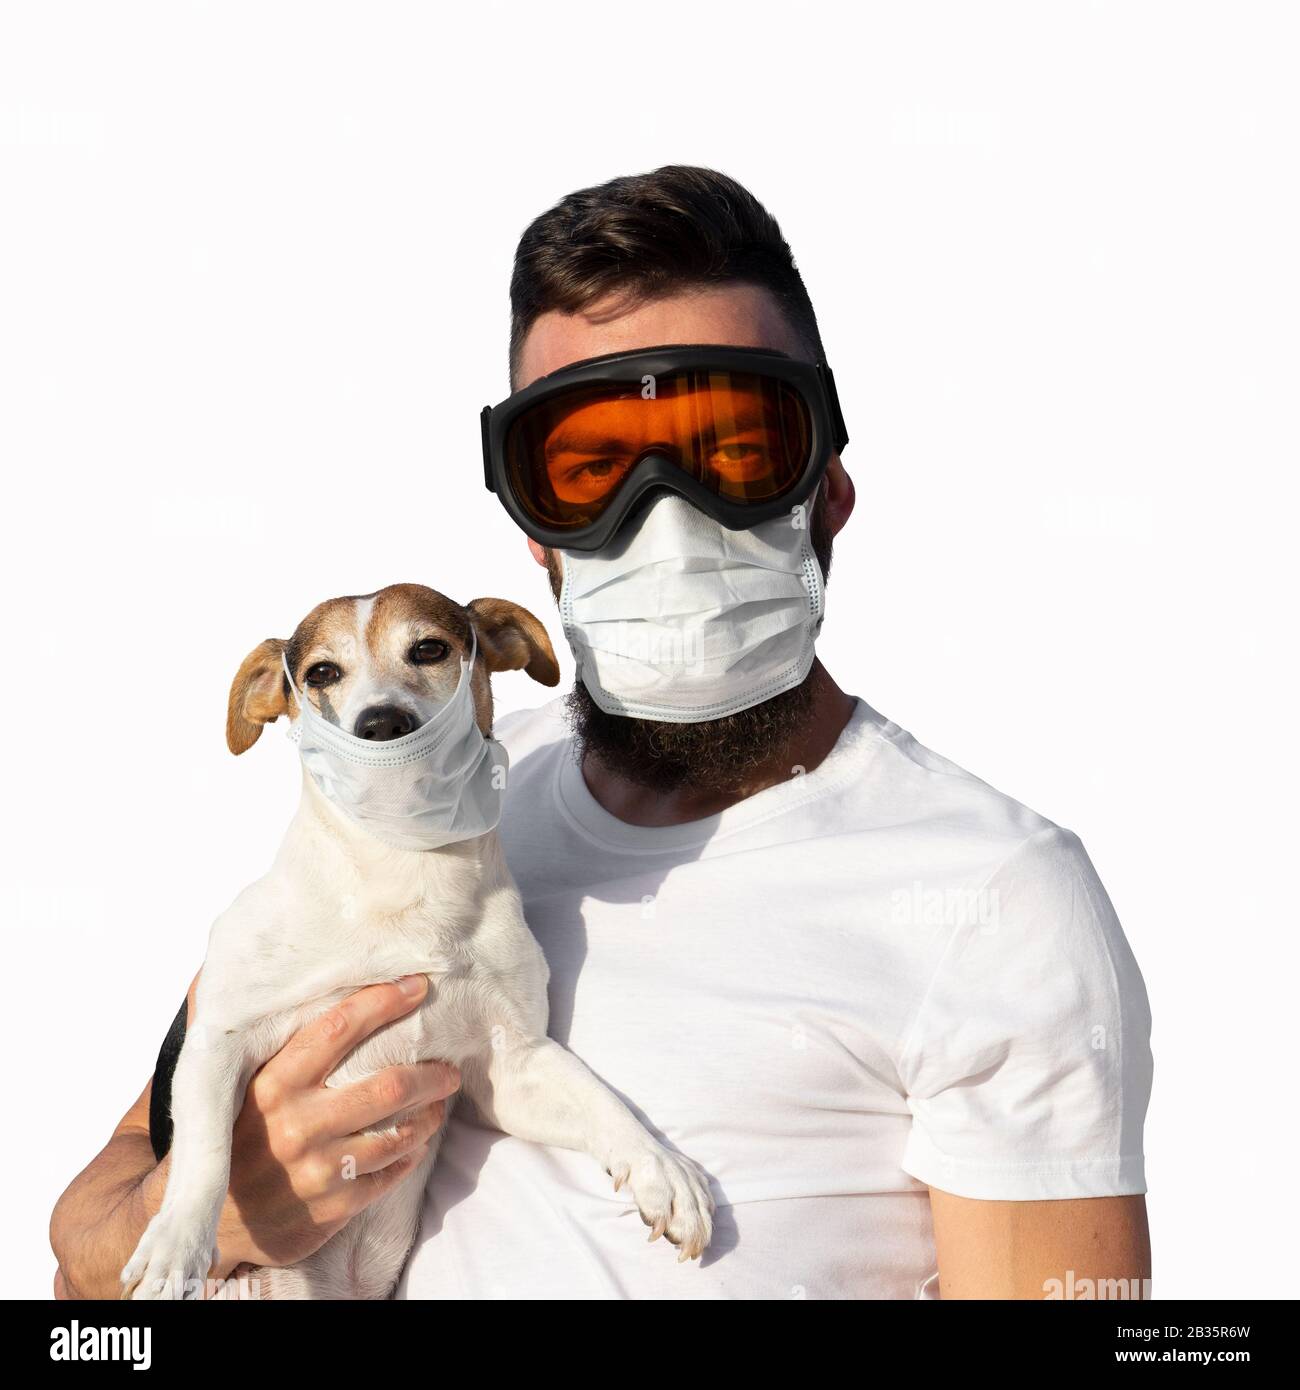 Mann in Schutzmaske und Brille hält süßen Jack russell Hund in  medizinischer Maske. Konzept der Haustierallergie oder Prävention von  Viruserkrankungen und Coronavirus-Pandemie, Blick auf die Kamera, isoliert  auf Weiß Stockfotografie - Alamy